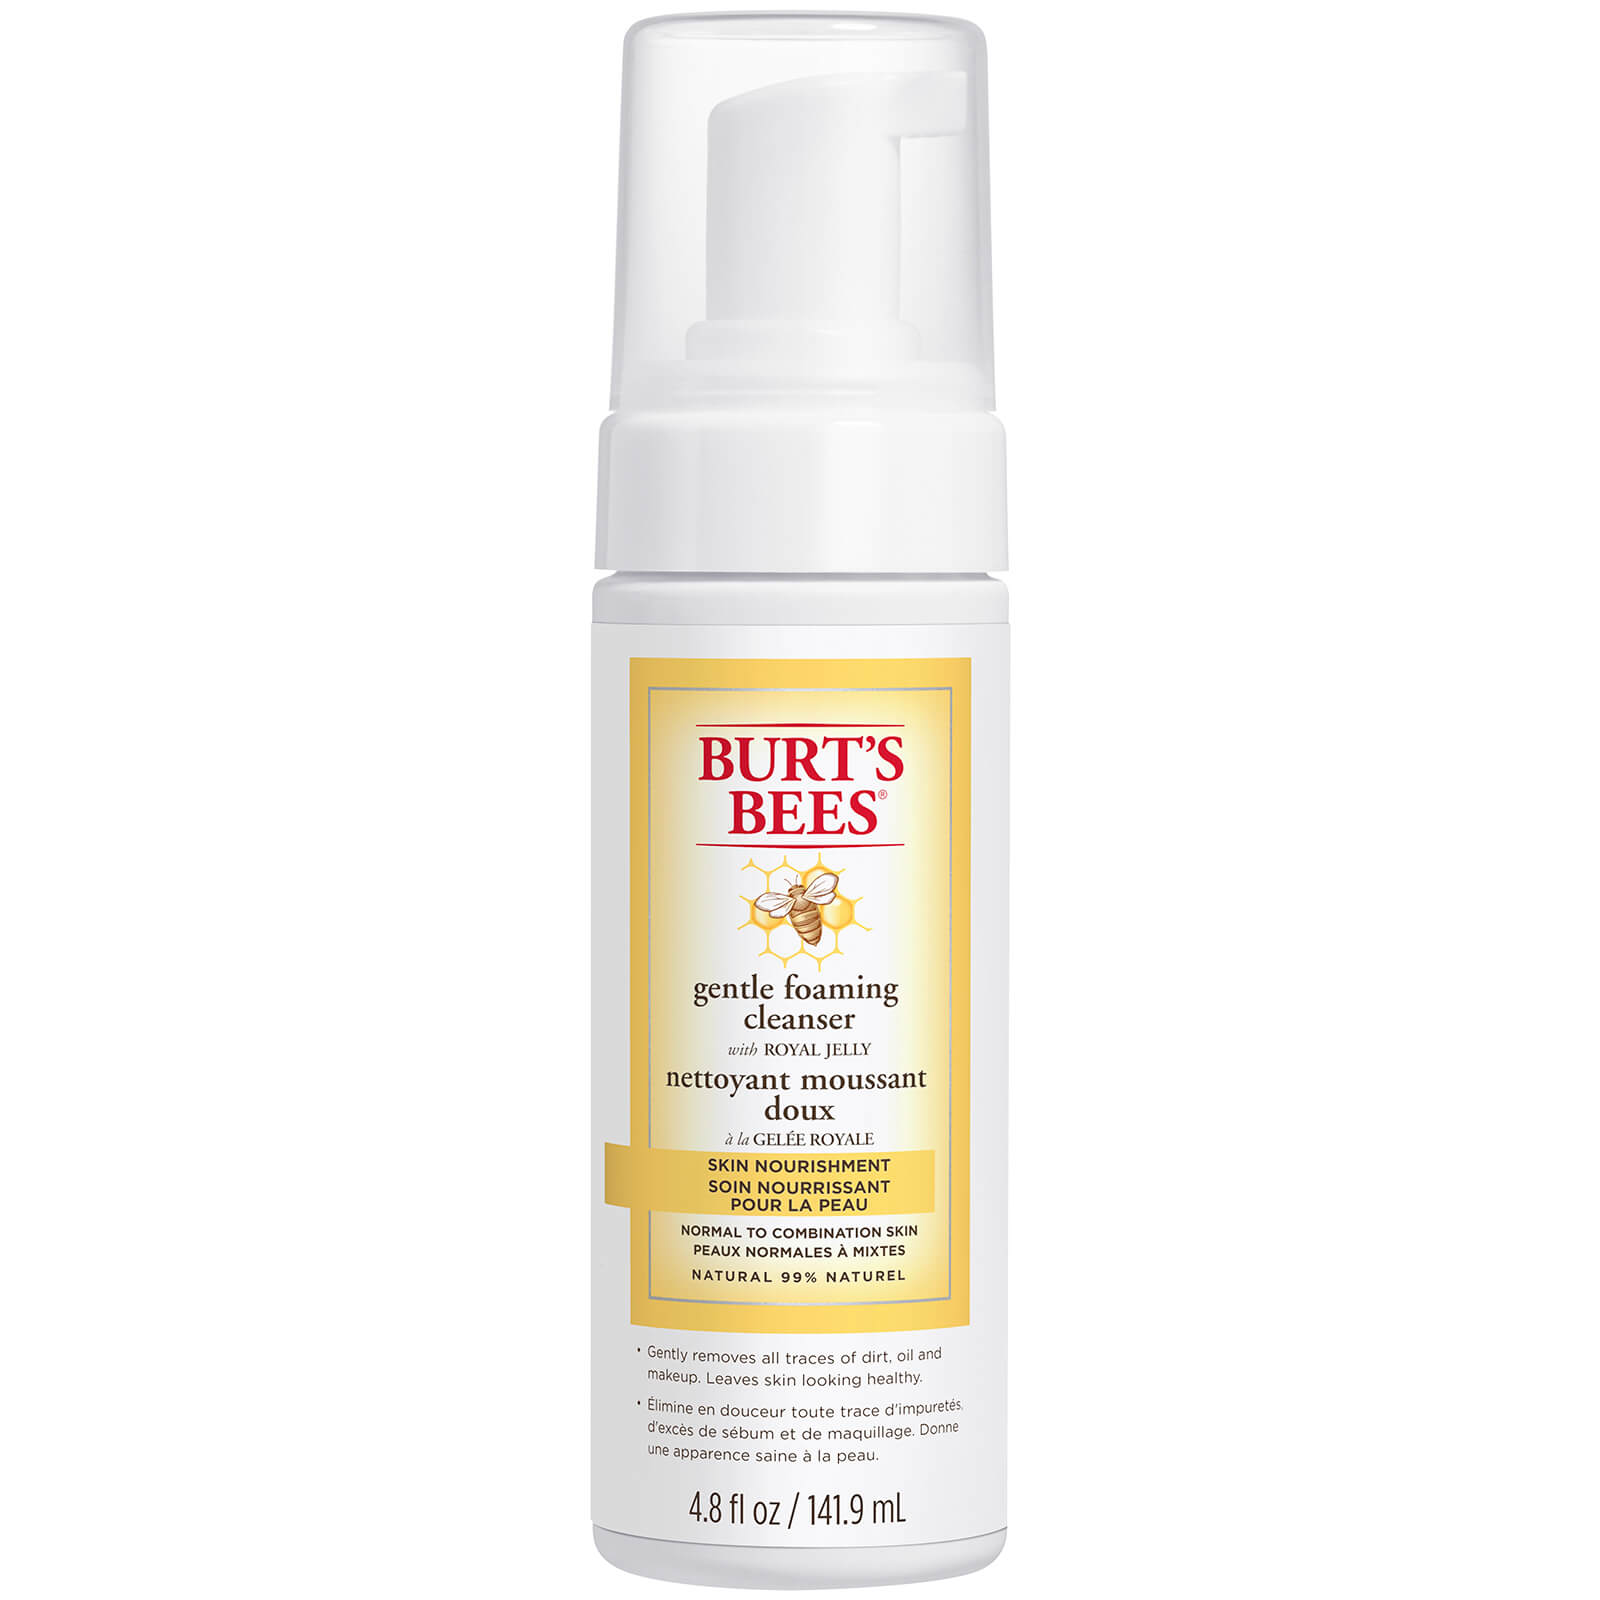 Espuma limpiadora Skin Nourishment de Burt's Bees 141,9 ml